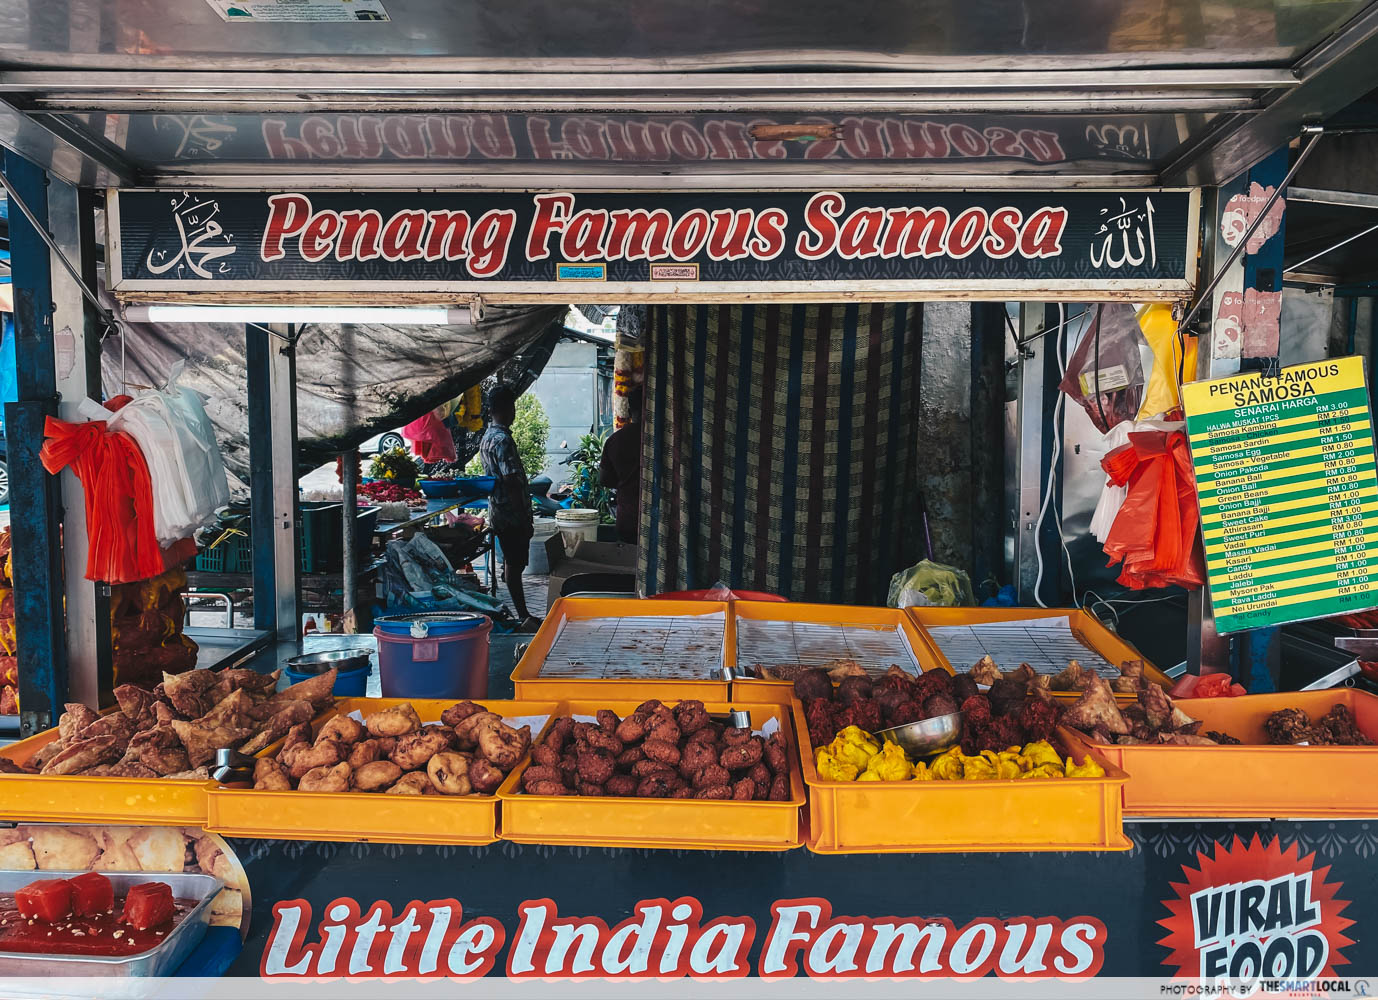 penang famous samosa - stall